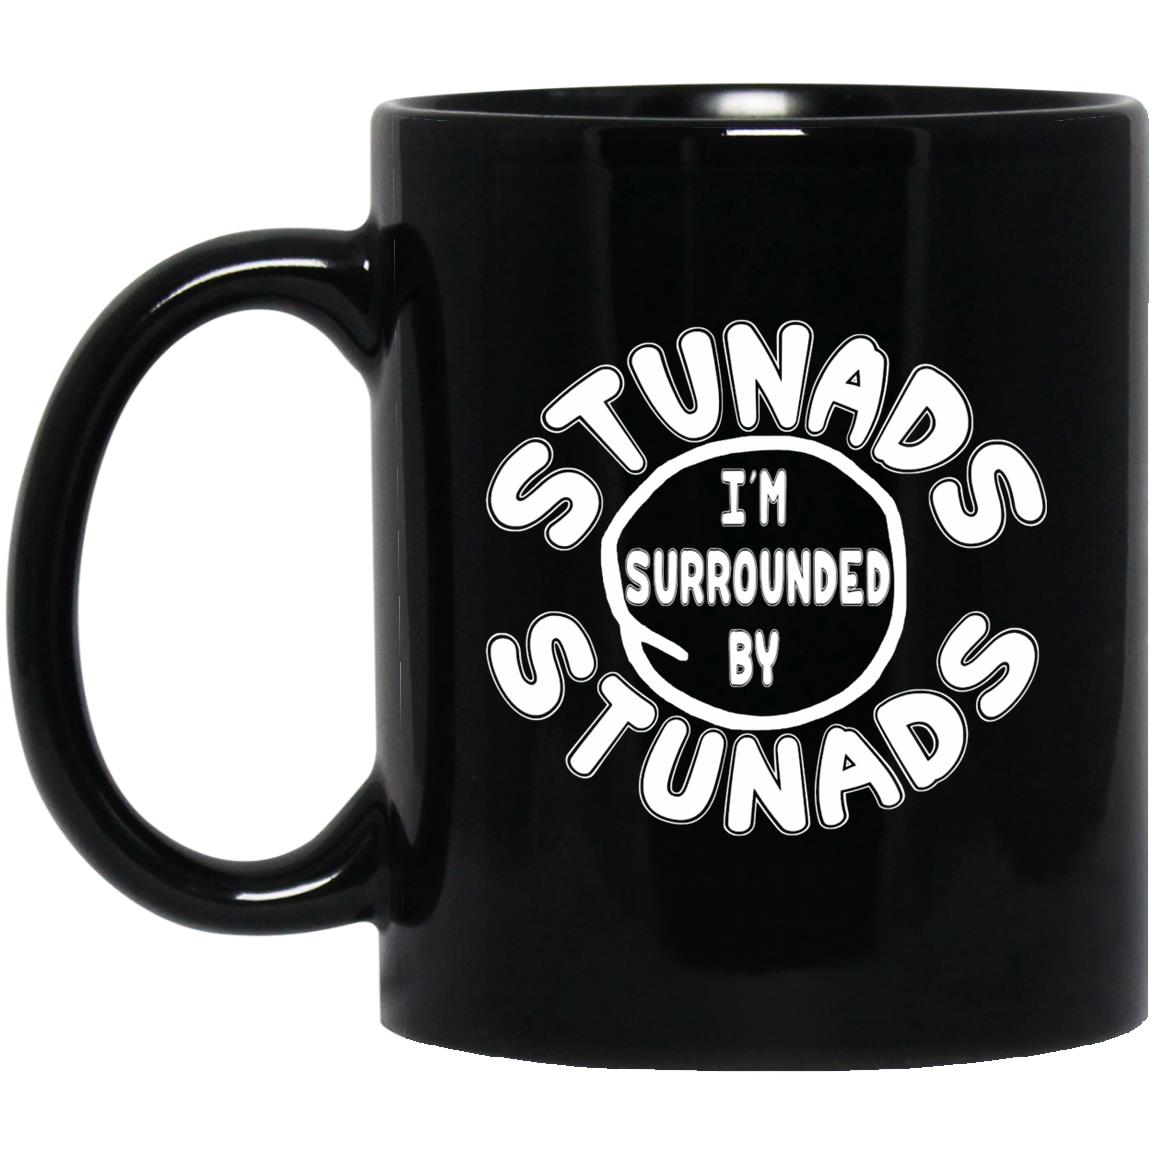 Surrounded By Stunads 11 oz. Black Mug